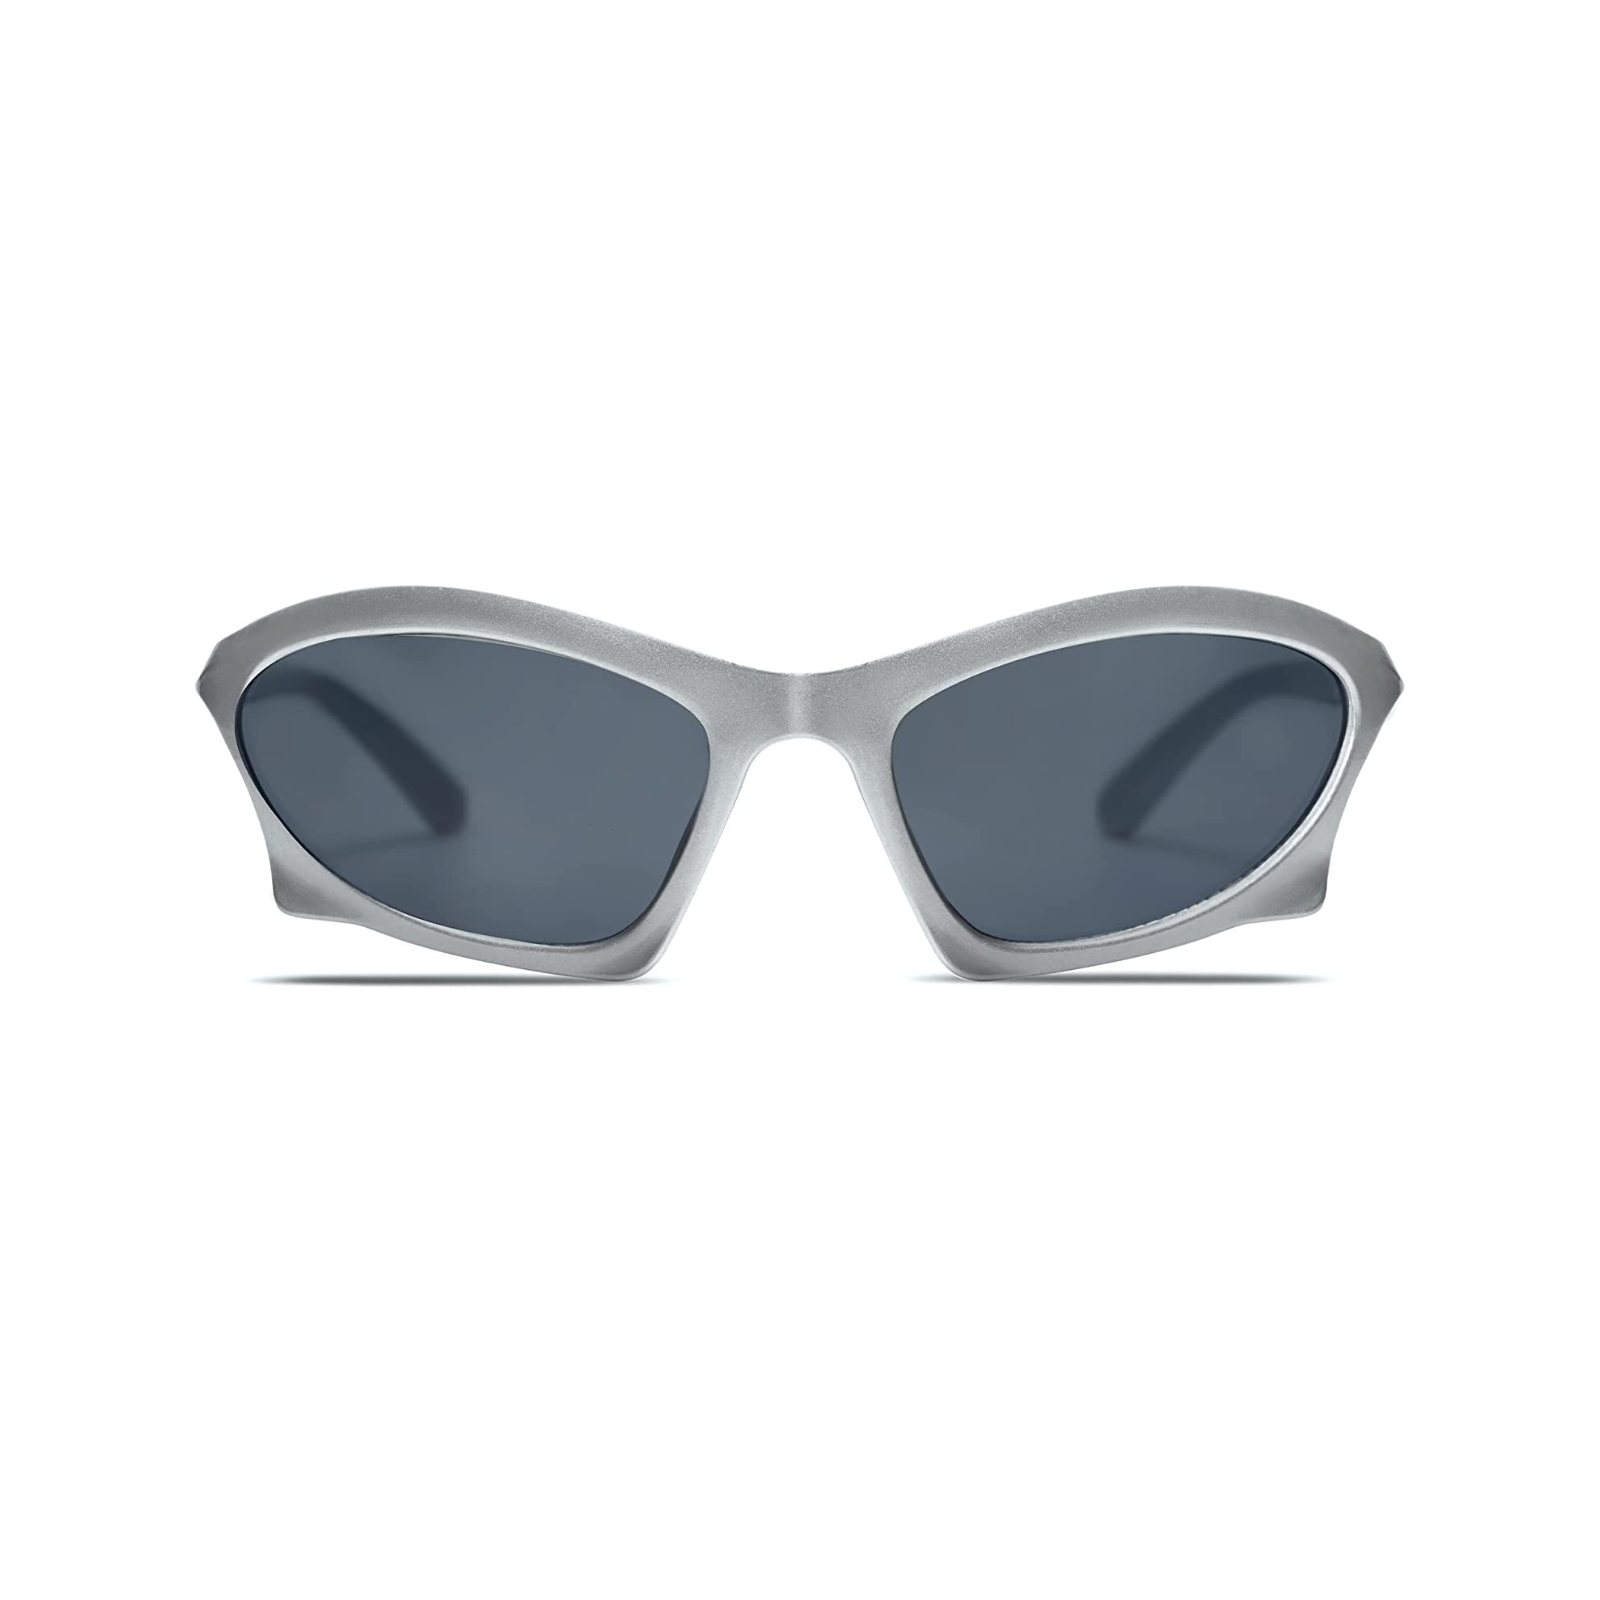 Roma Sunglasses + Silver / Black